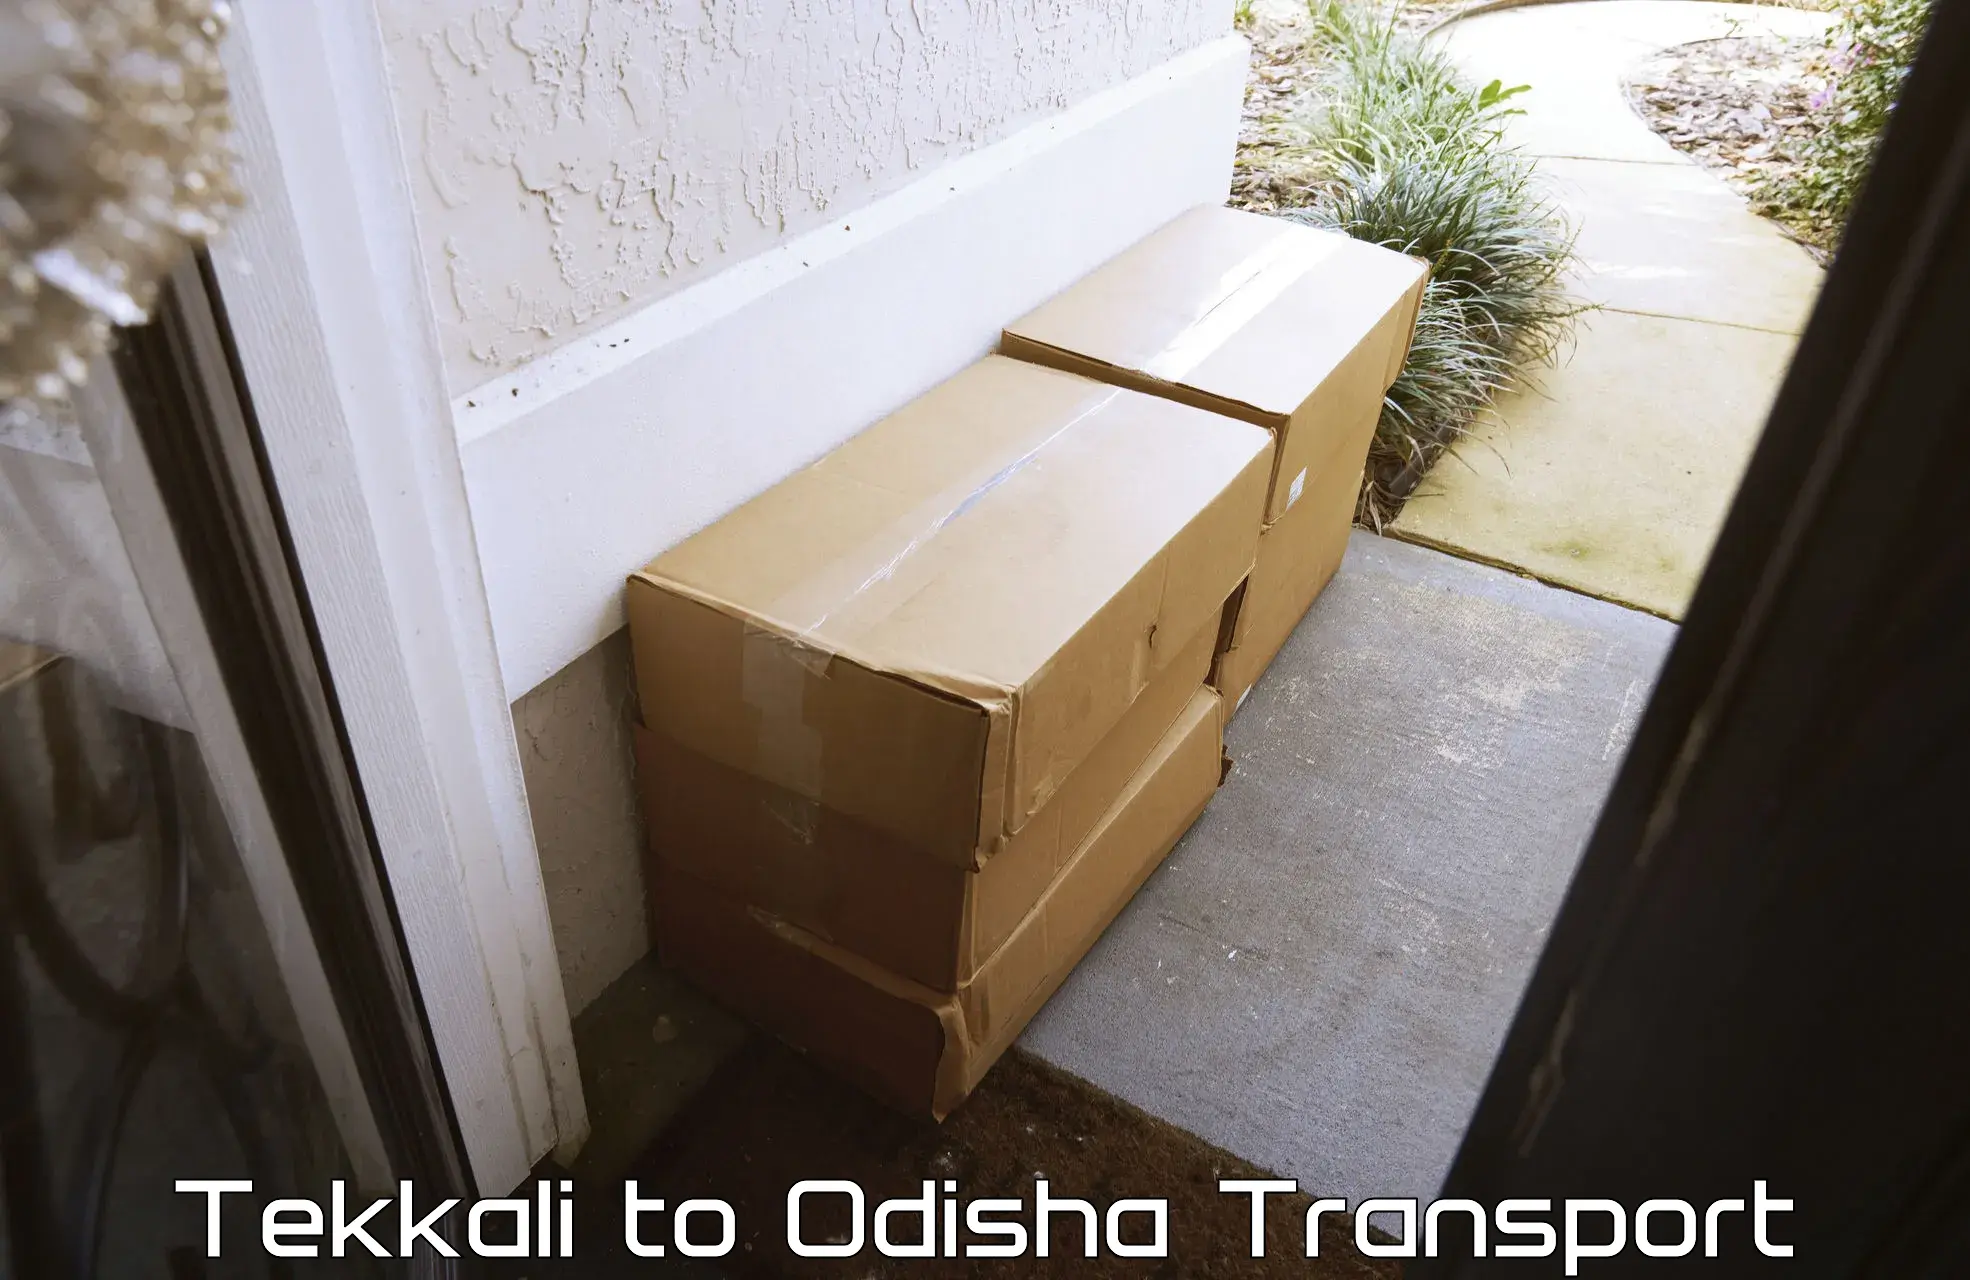 Shipping partner Tekkali to Dhamara